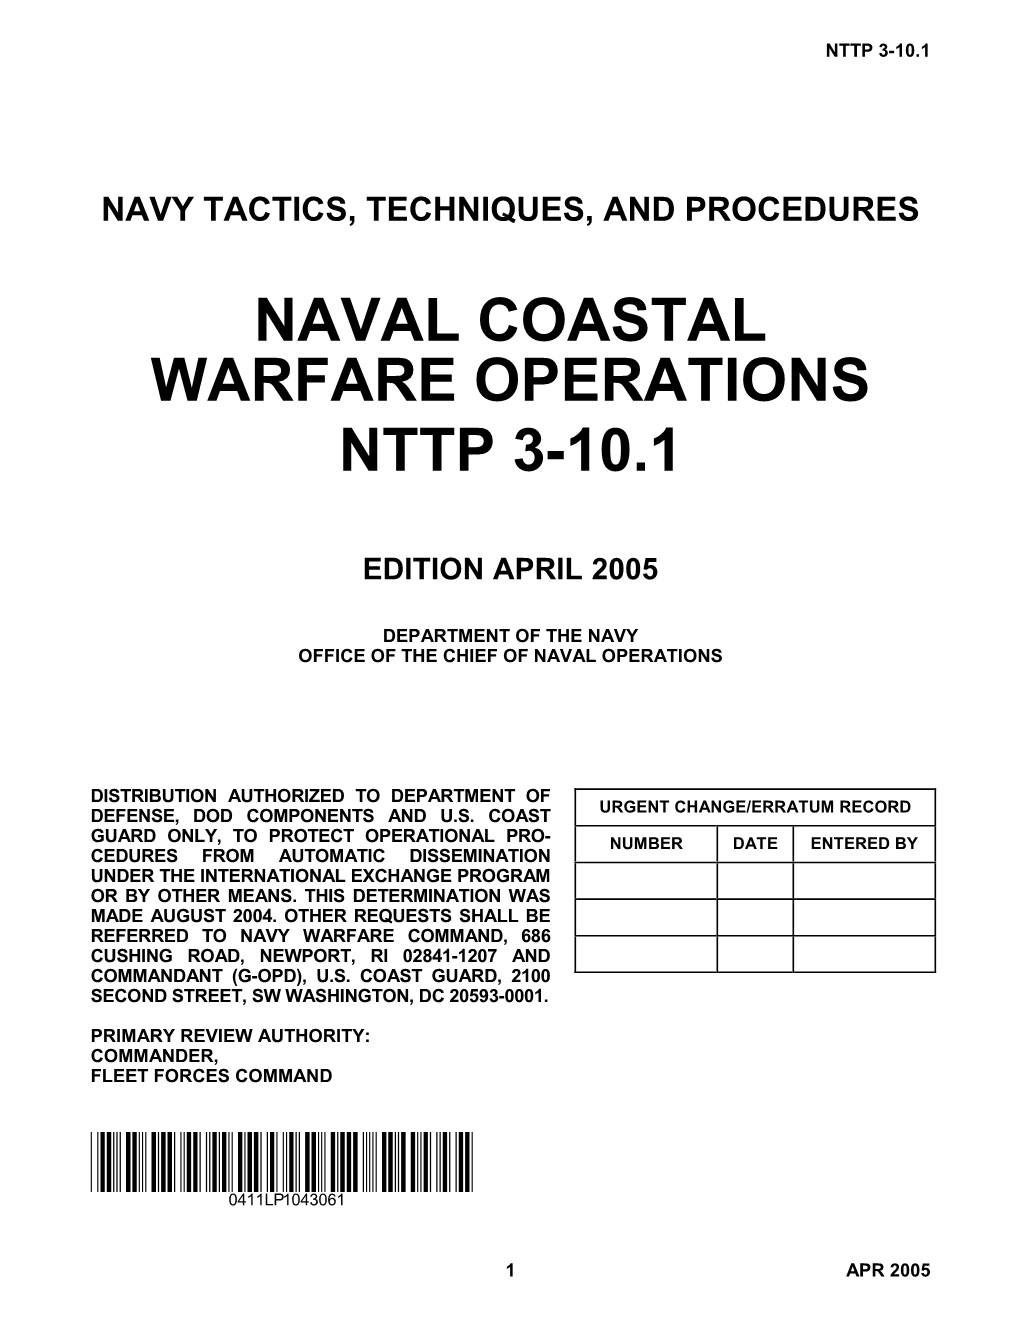 Naval Coastal Warfare Operations Nttp 3-10.1